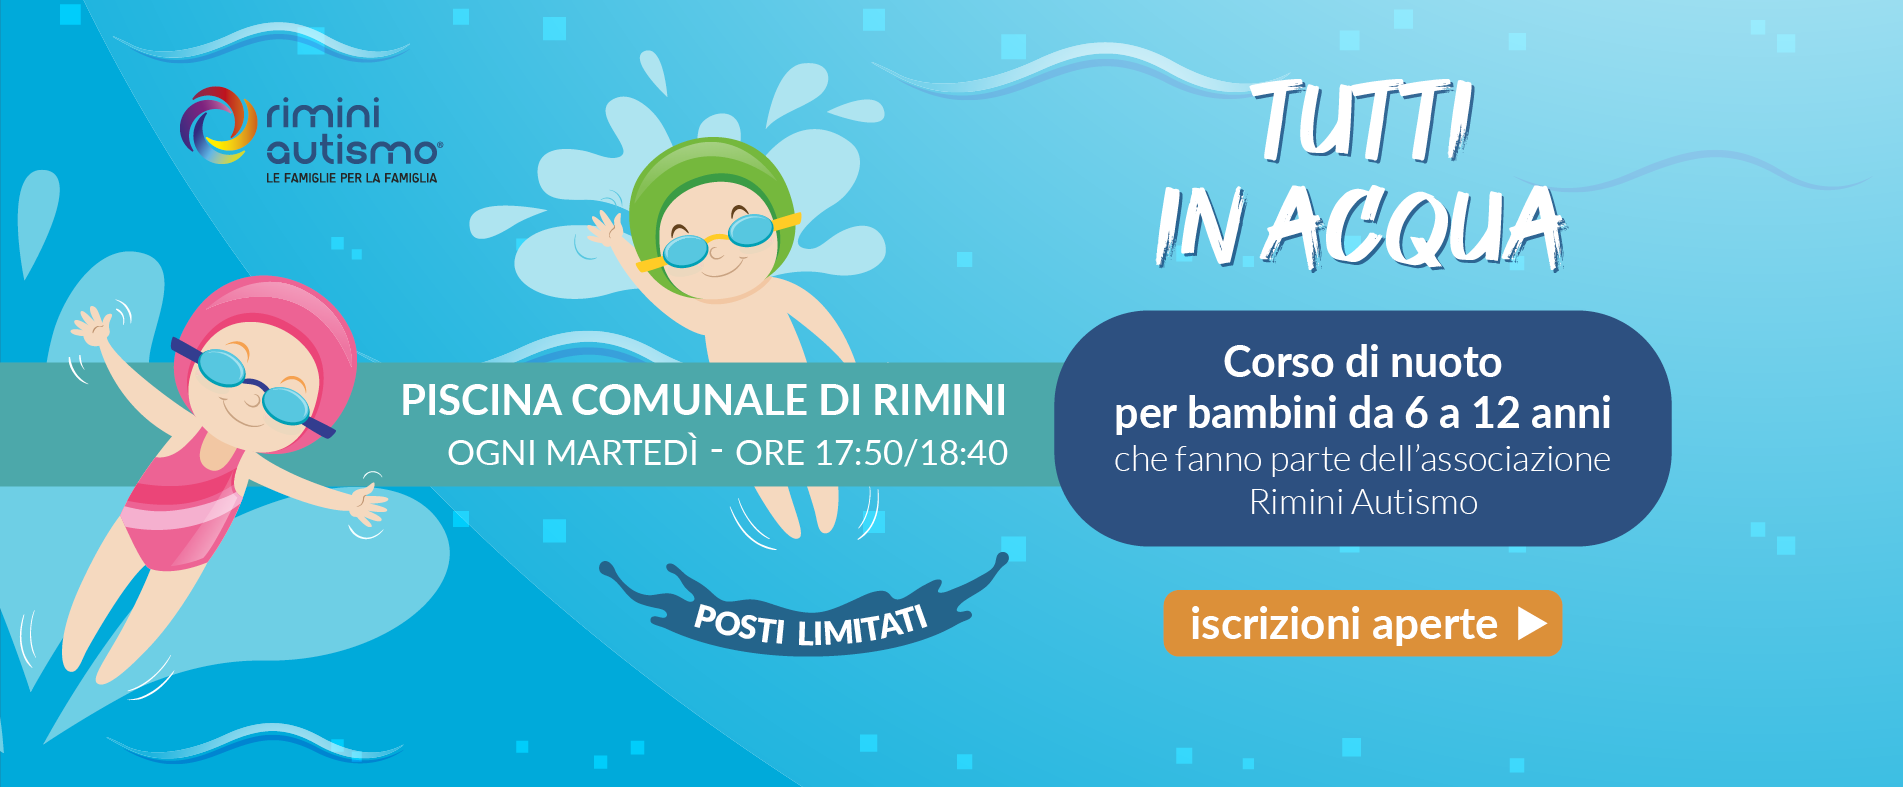 Corso di nuoto per bambini autistici da 6 a 12 anni Rimini Autismo